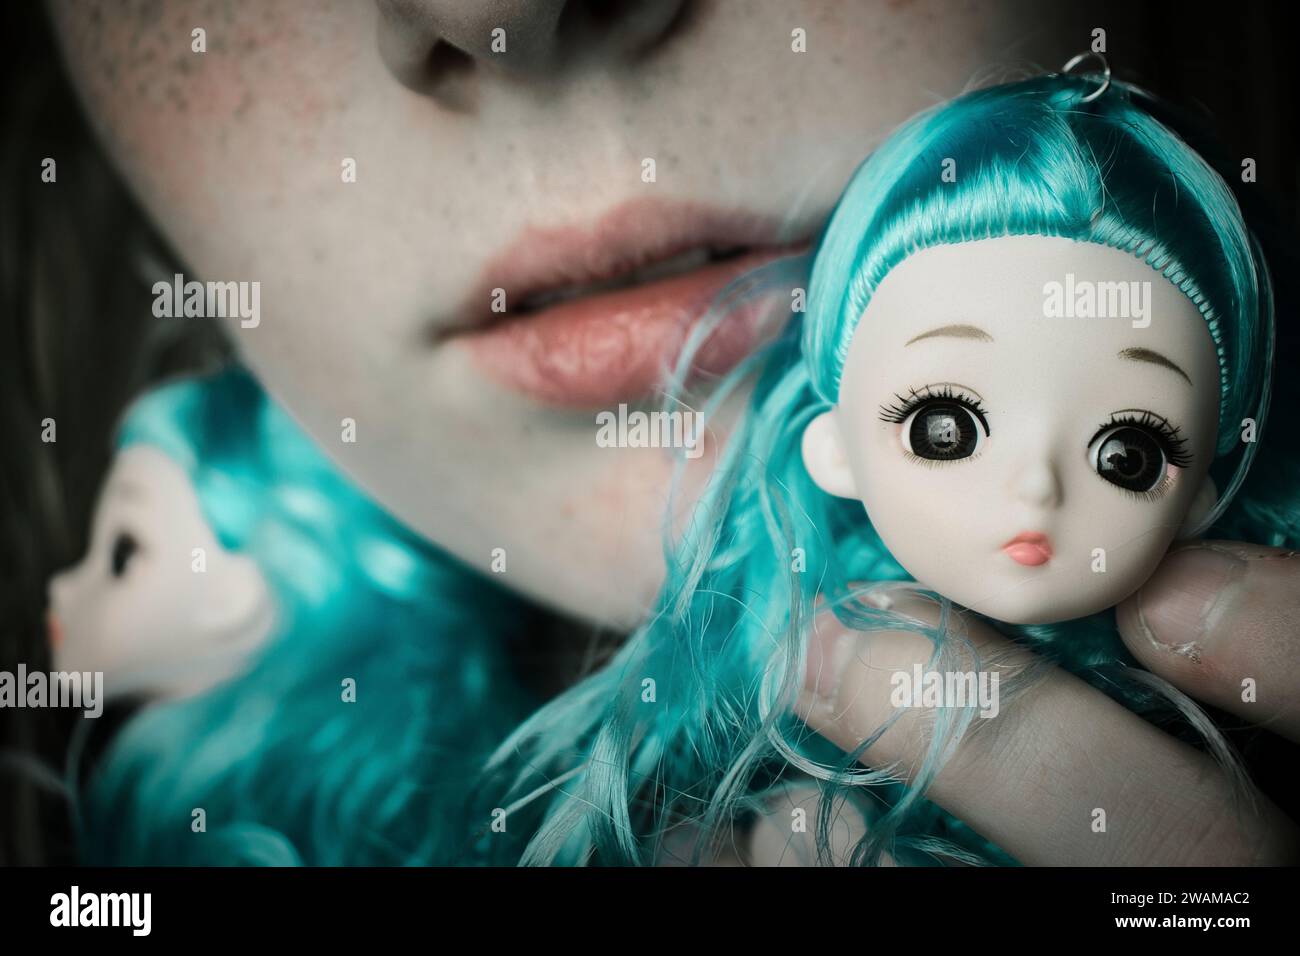 Ritratto di bambola gotica | Dark Fantasy | Fotografia dei giocattoli | testa giocattolo animo inquietante | viso primo piano | collezionista di bambine Fairtyale Girl | bambola in porcellana infestata Foto Stock